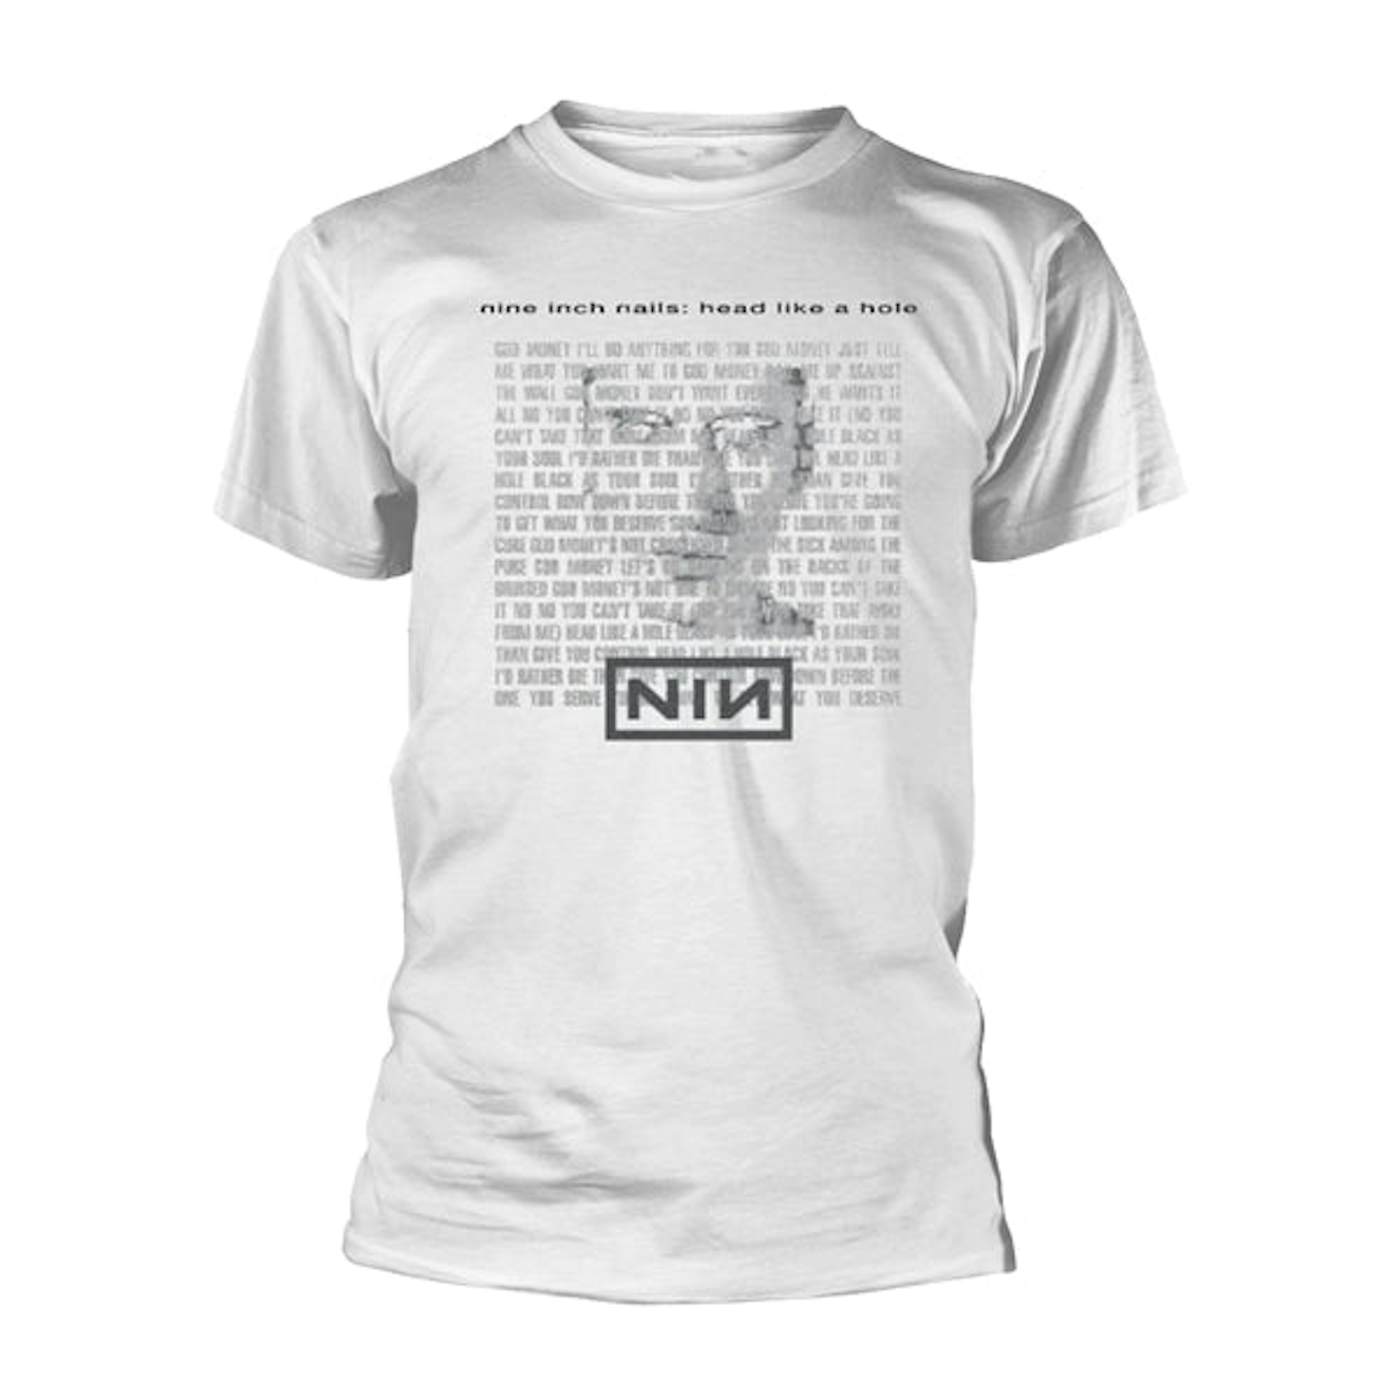 Nine Inch Nails T-Shirt - Head Like A Hole (White)